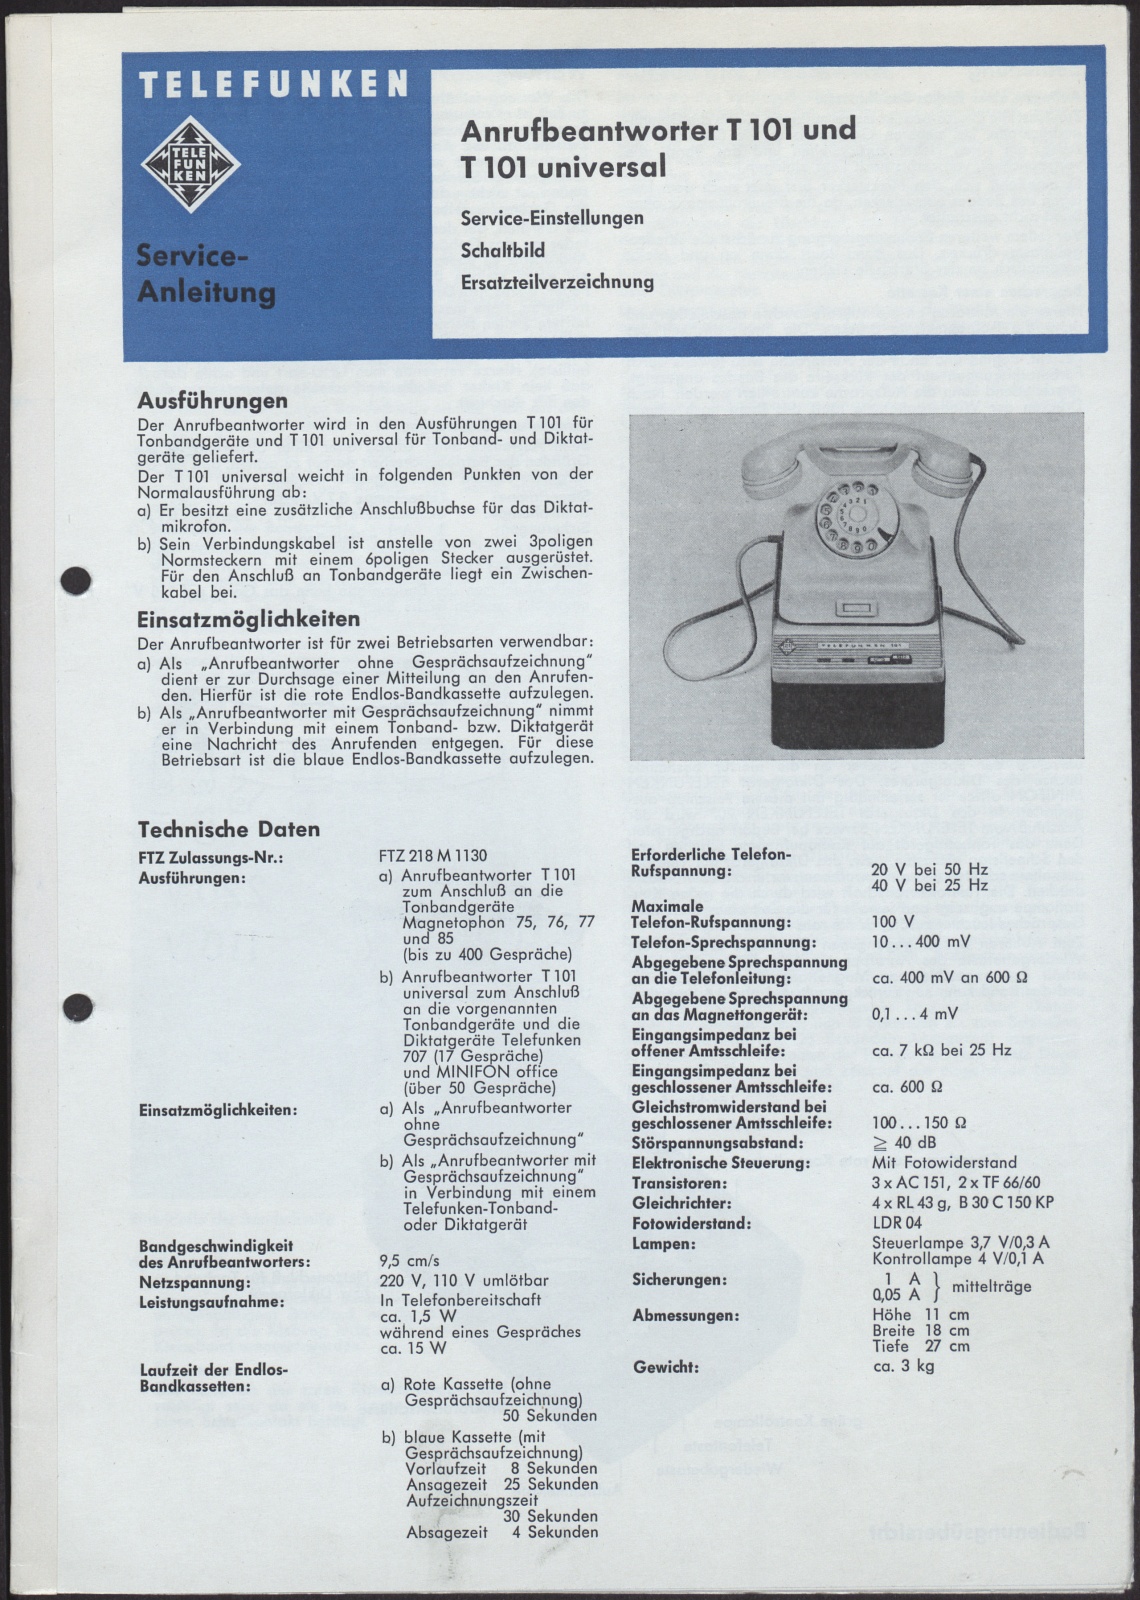 Bedienungsanleitung: Telefunken Service-Anleitung für Anrufbeantworter T 101 und T 101 universal (Stiftung Deutsches Technikmuseum Berlin CC0)